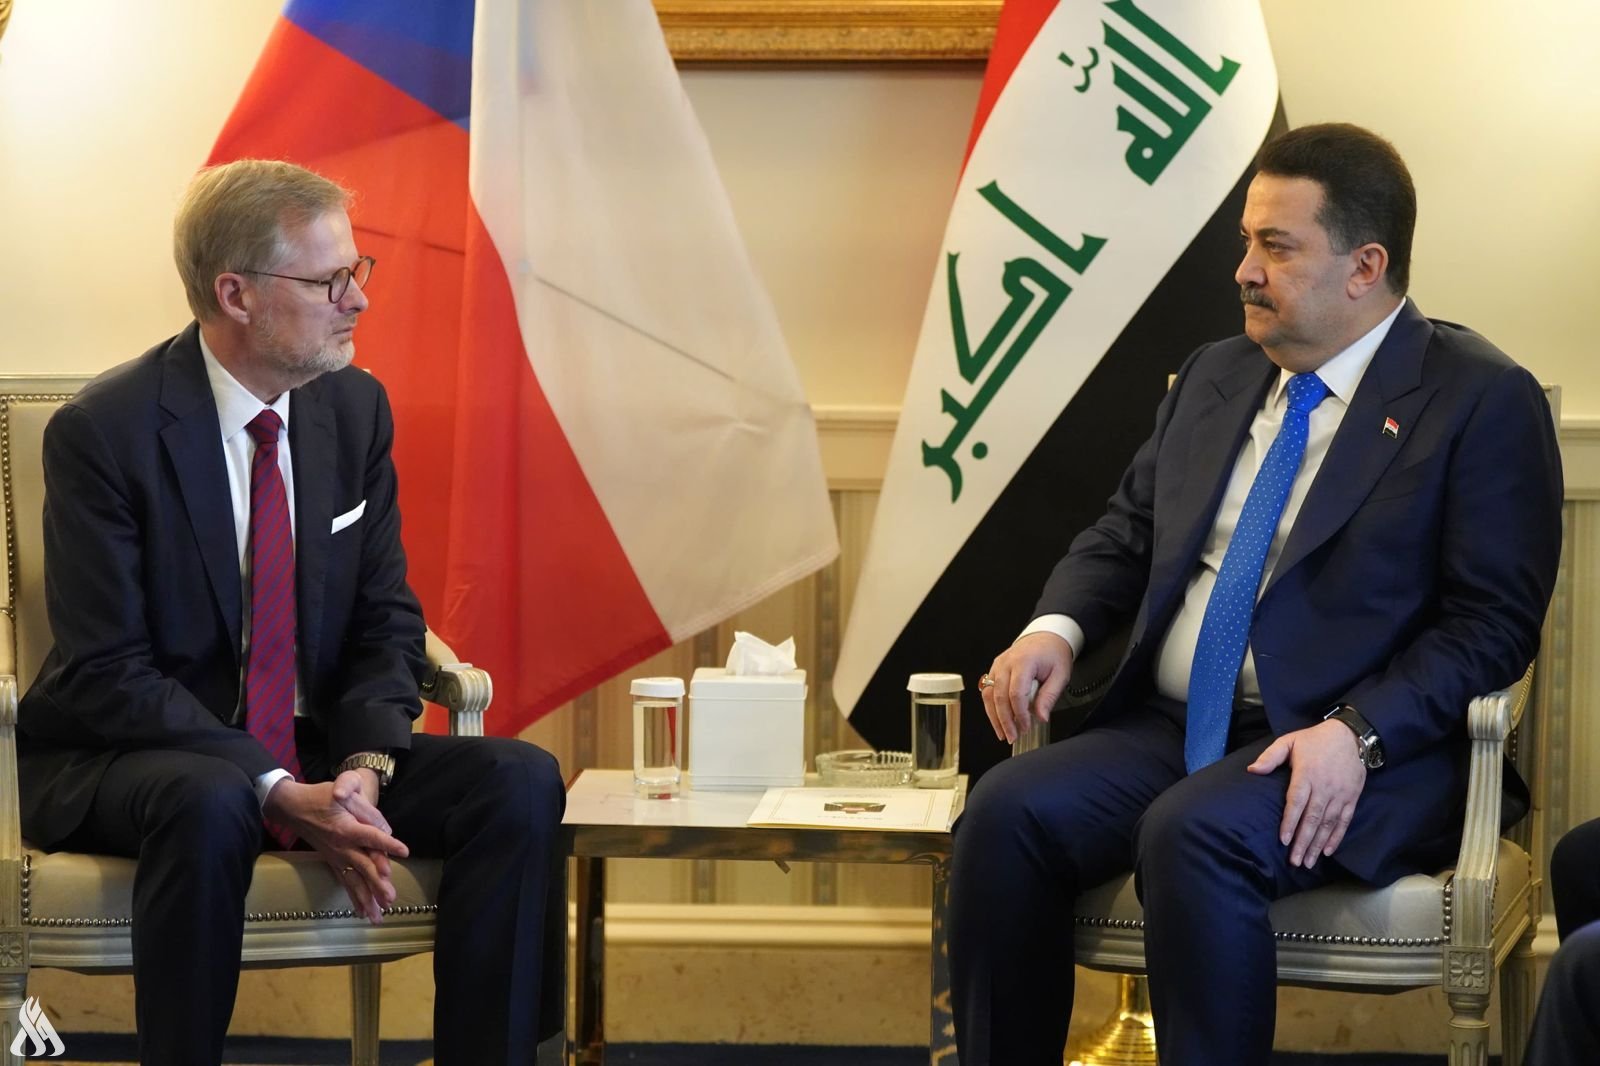 Irák a Česká republika jednají o posílení výměny a otevření partnerství » Irácká tisková agentura